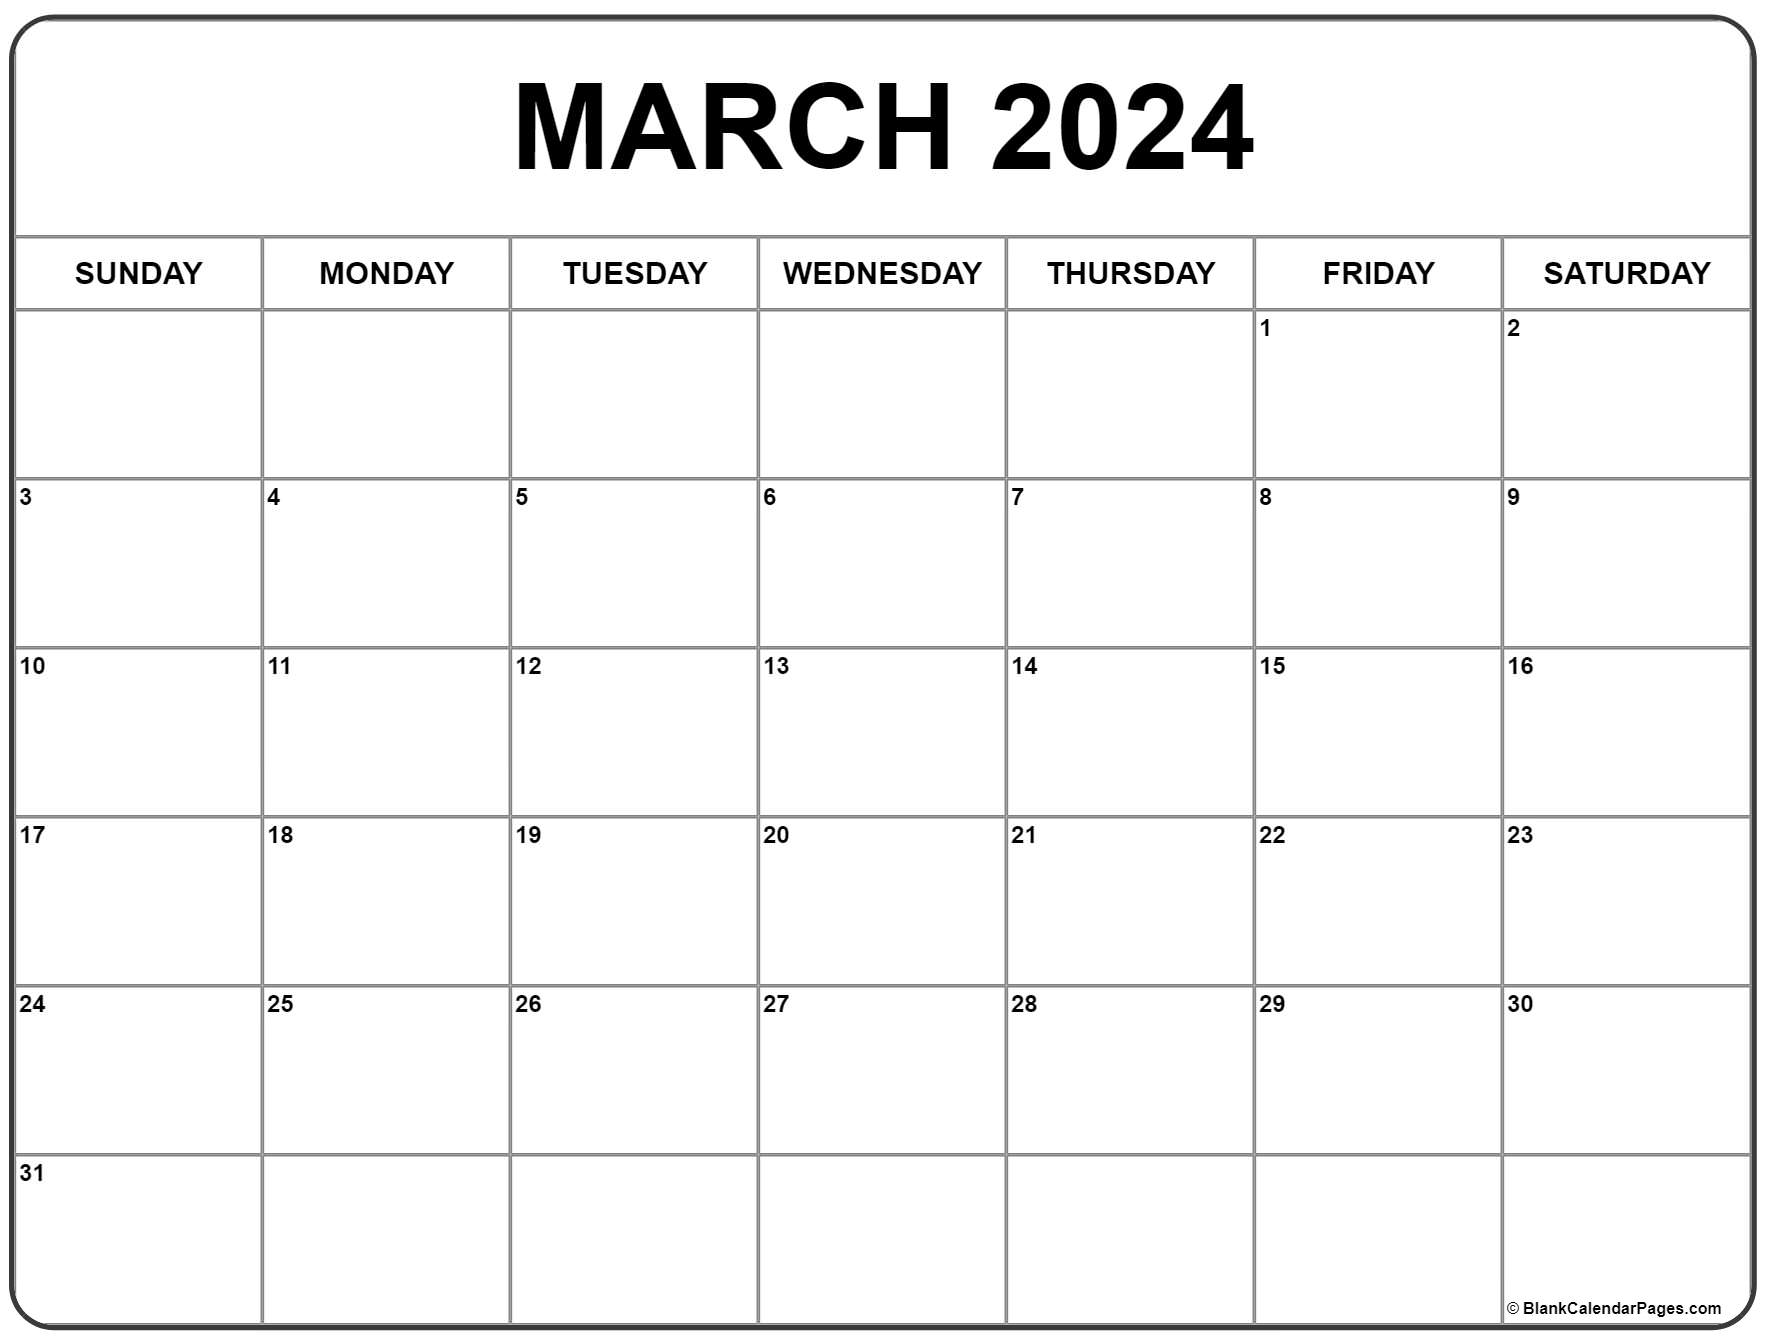 March 2024 Calendar | Free Printable Calendar for Calendar Printable 2024 March